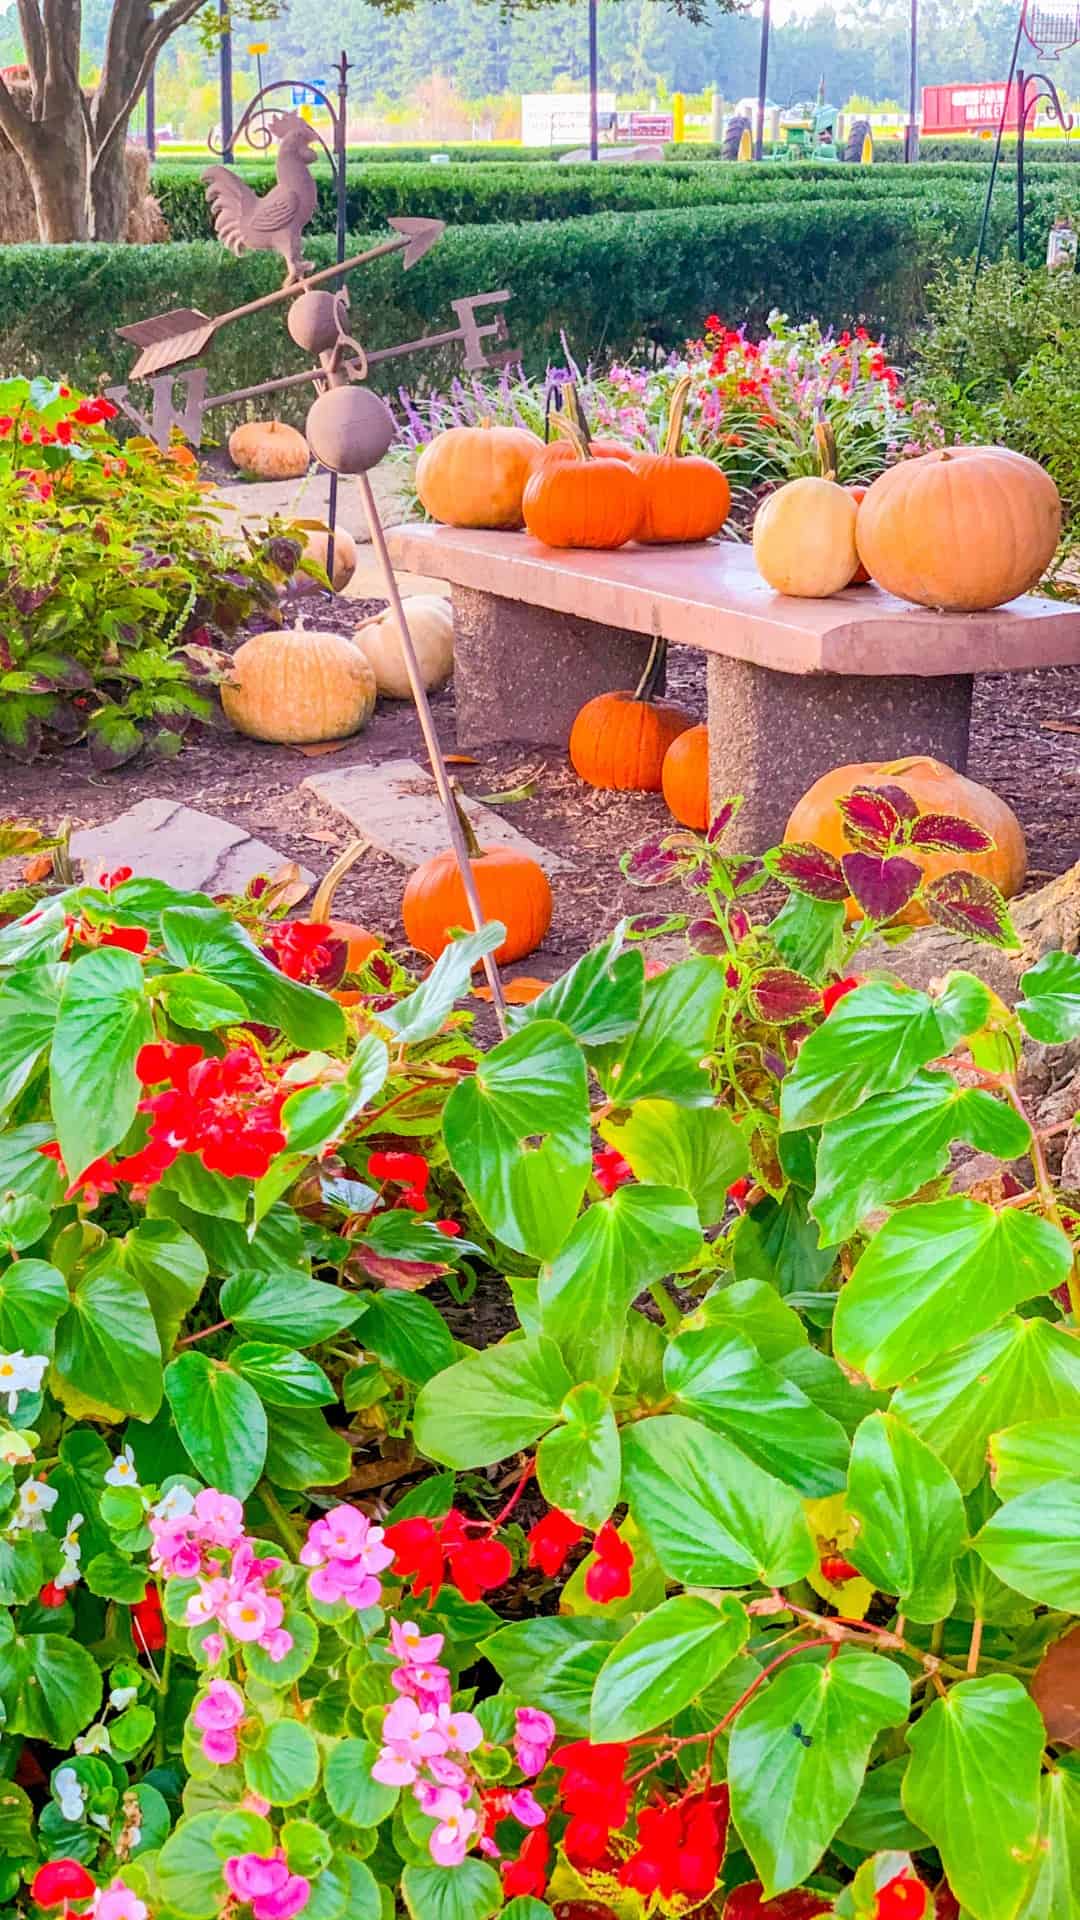 A garden with pumpkins and flowers in it - Garden, pumpkin